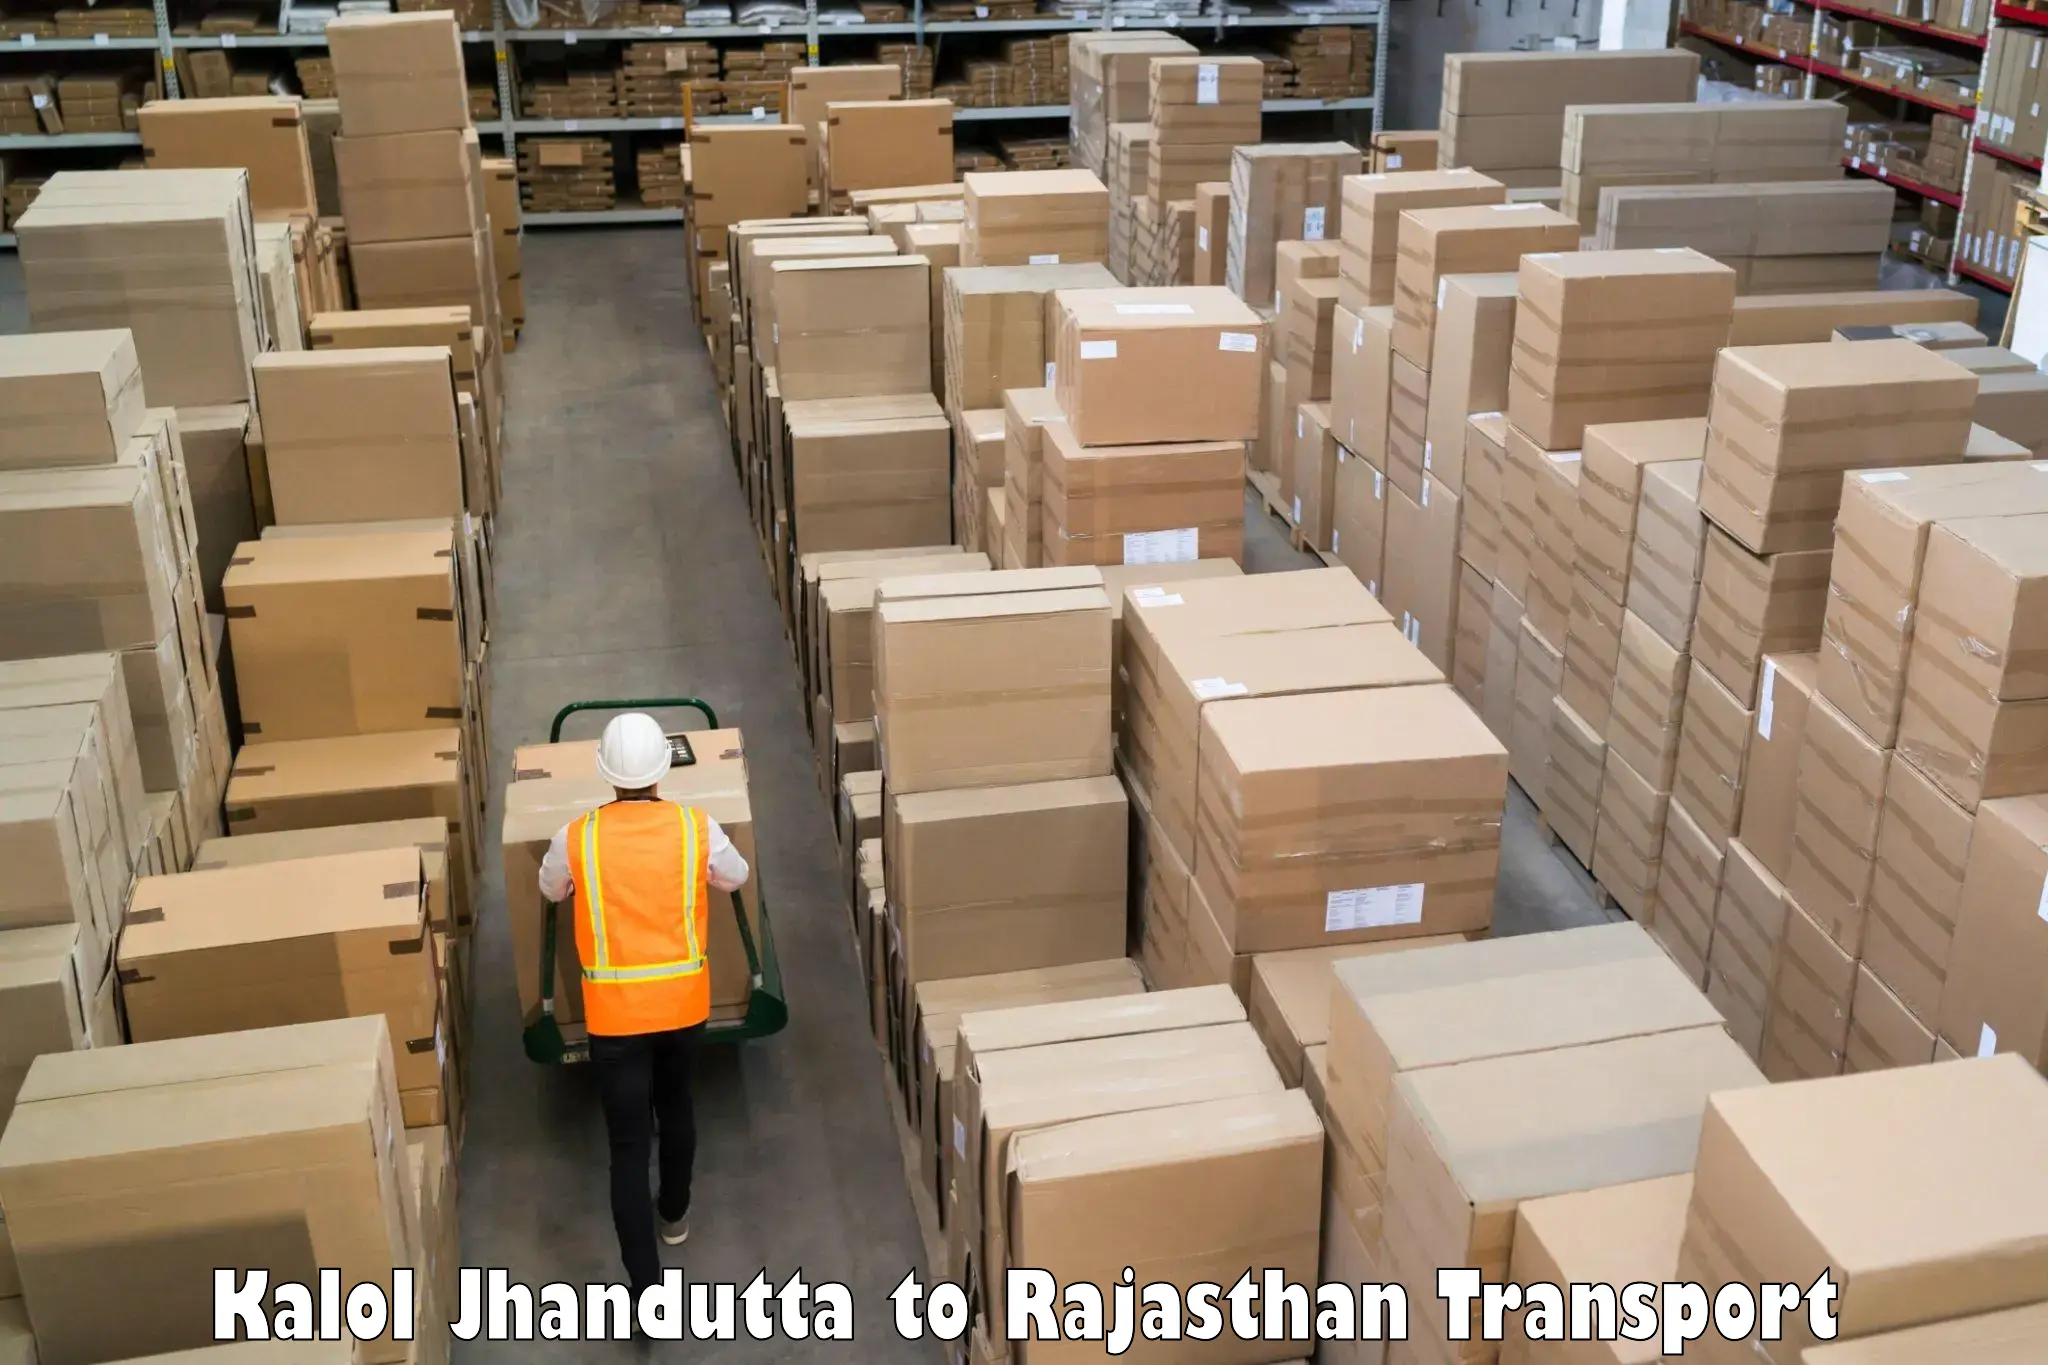 Best transport services in India Kalol Jhandutta to Jaipur